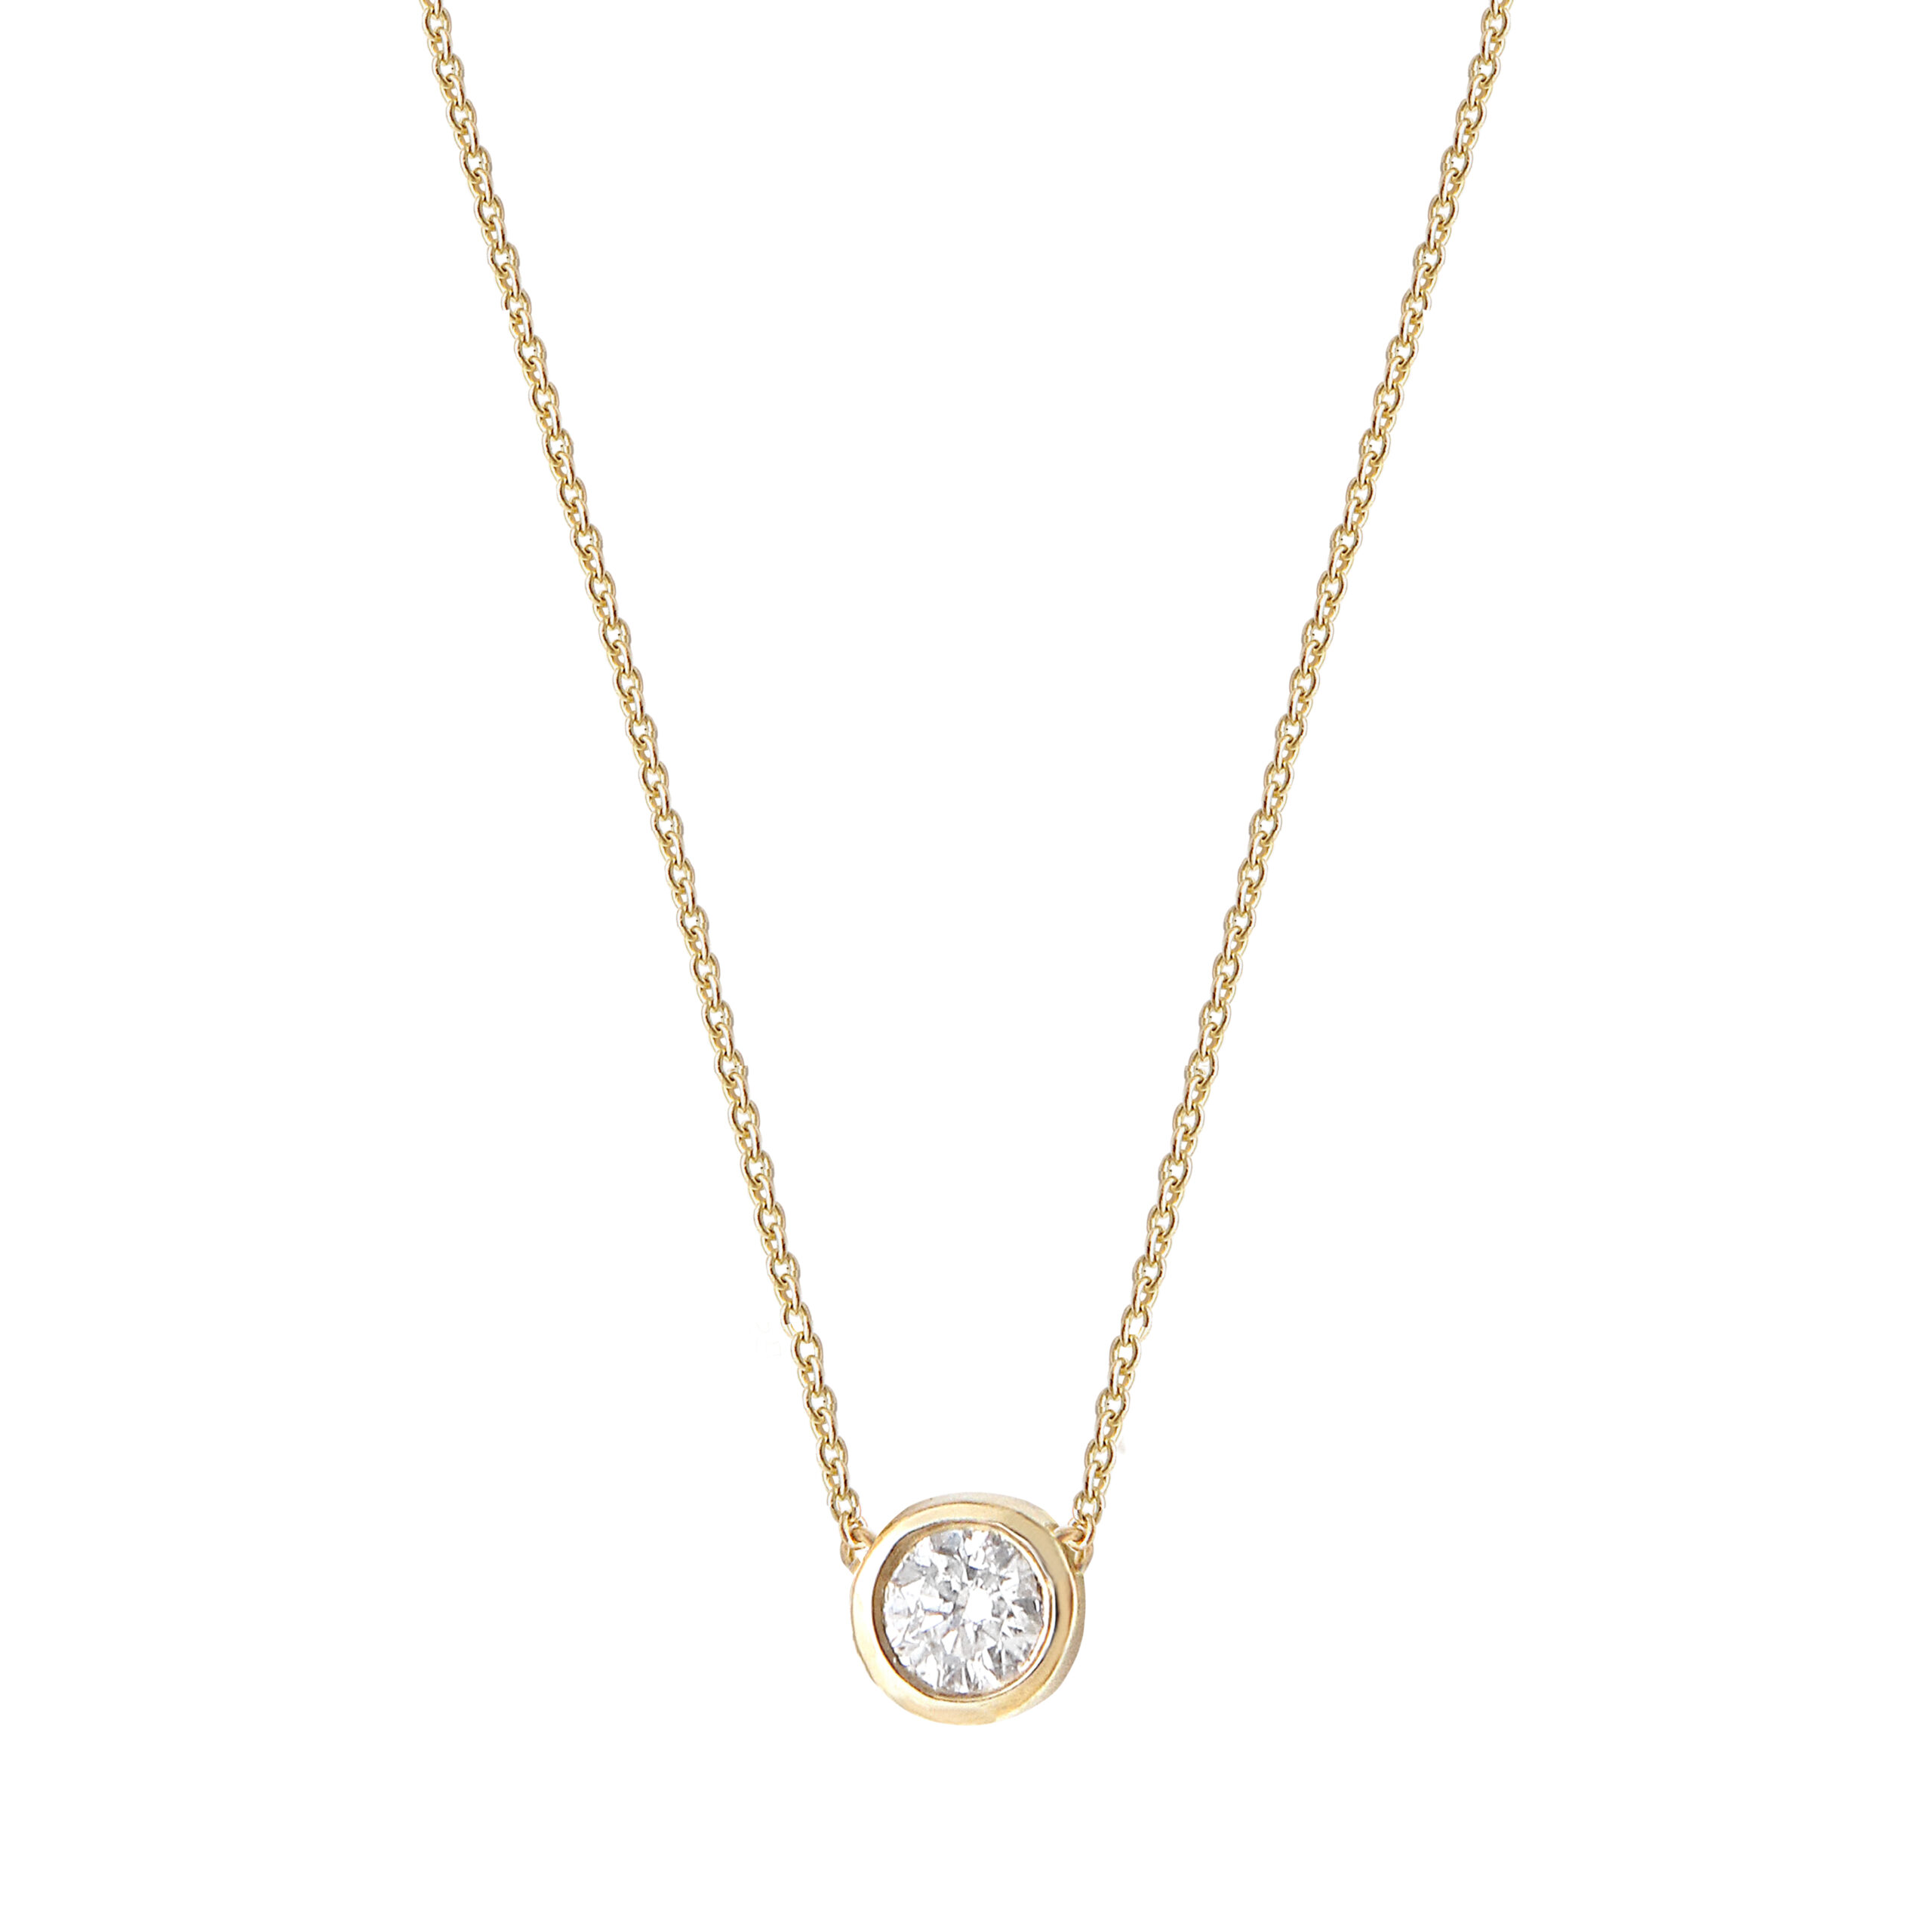 Ce collier pendentif chic et tendance en or jaune et son diamant solitaire prisé par les stars et célébrités. Ce bijou de joaillerie fine fabriqué enFrance est un cadeau idéal pour une femme.